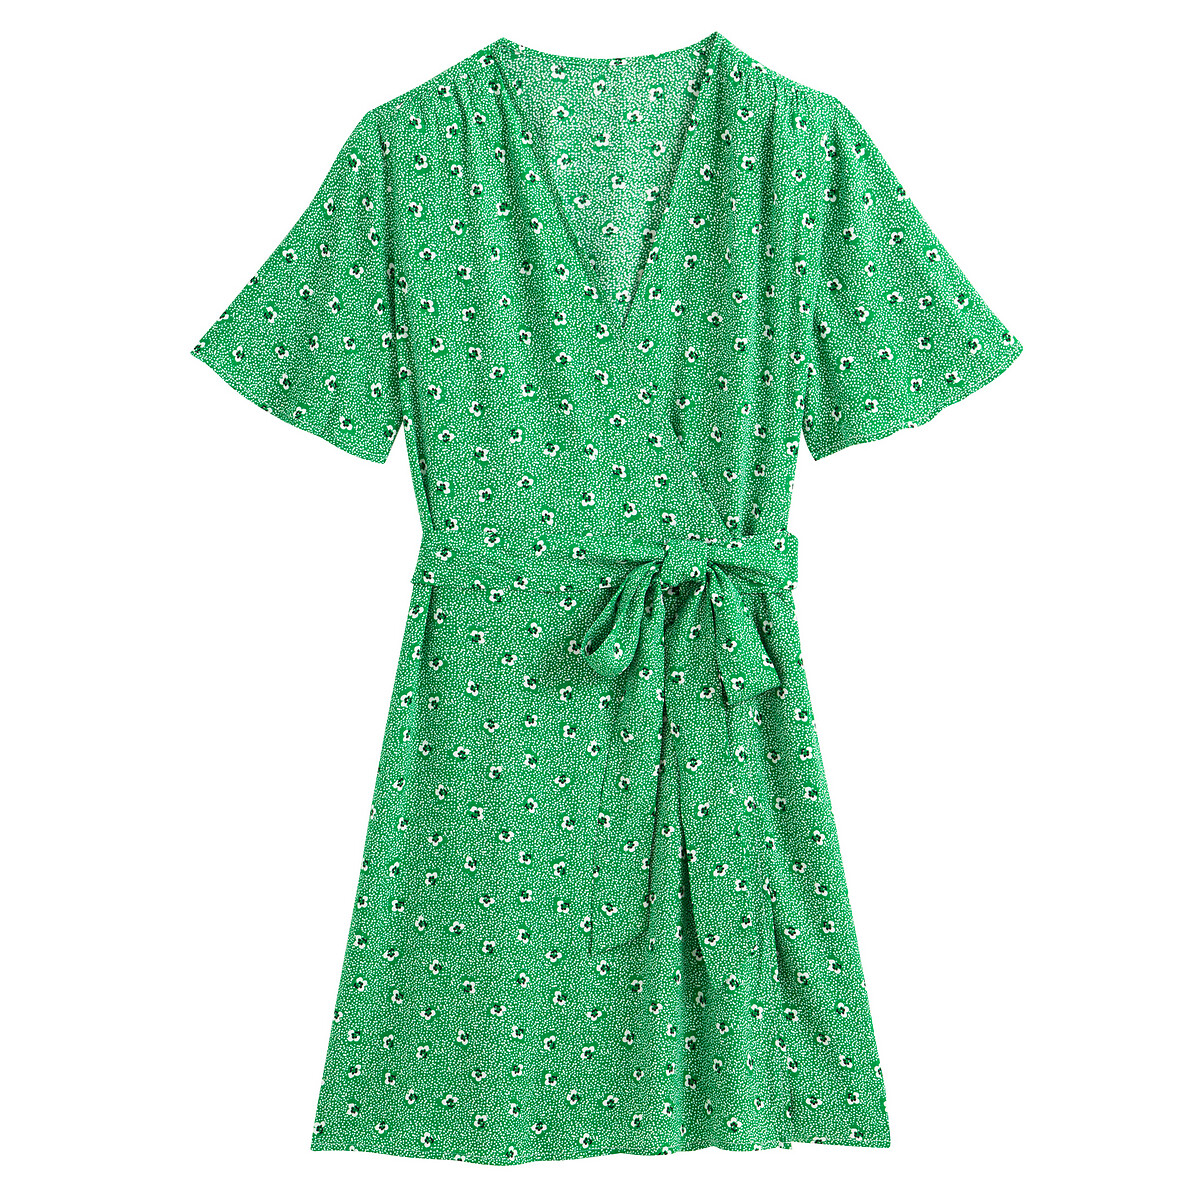 Платье LaRedoute С запахом с цветочным рисунком и короткими рукавами 46 (FR) - 52 (RUS) зеленый, размер 46 (FR) - 52 (RUS) С запахом с цветочным рисунком и короткими рукавами 46 (FR) - 52 (RUS) зеленый - фото 5